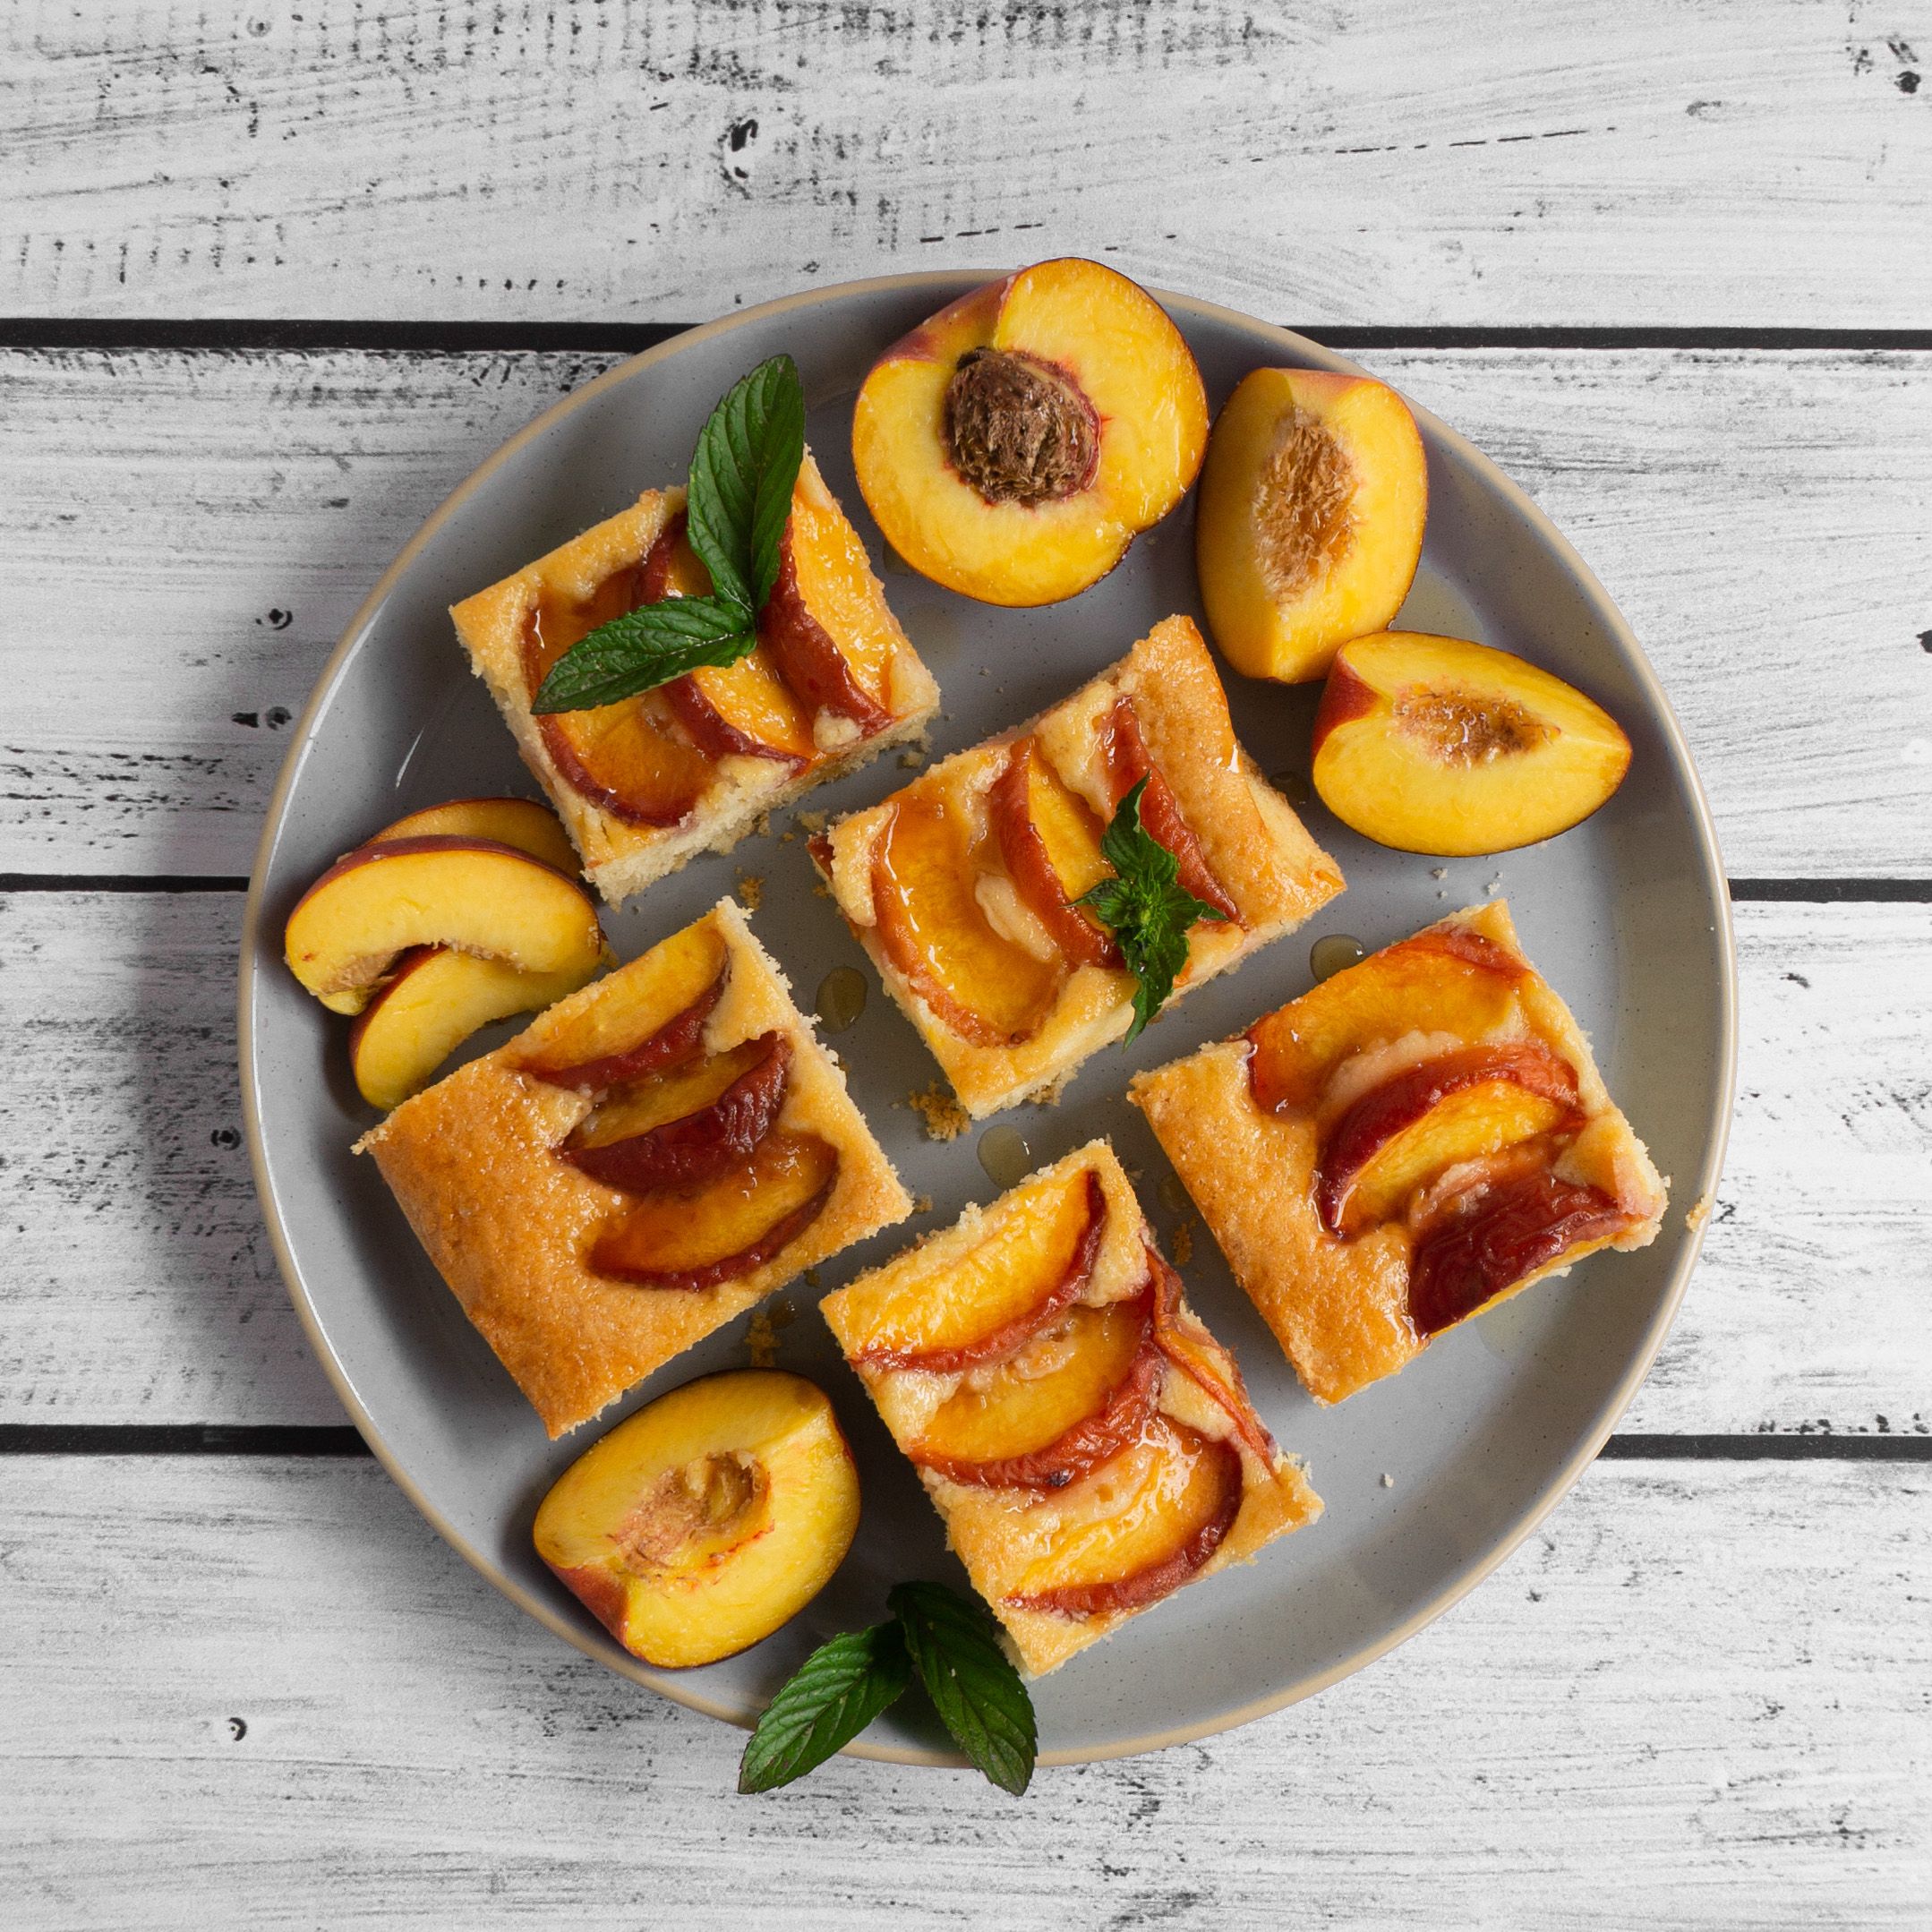 Dieses Bild zeigt fünf Stücke Pfirsichkuchen auf einem Kuchenteller von oben mit frischer Minze und frischen Pfirsichspalten